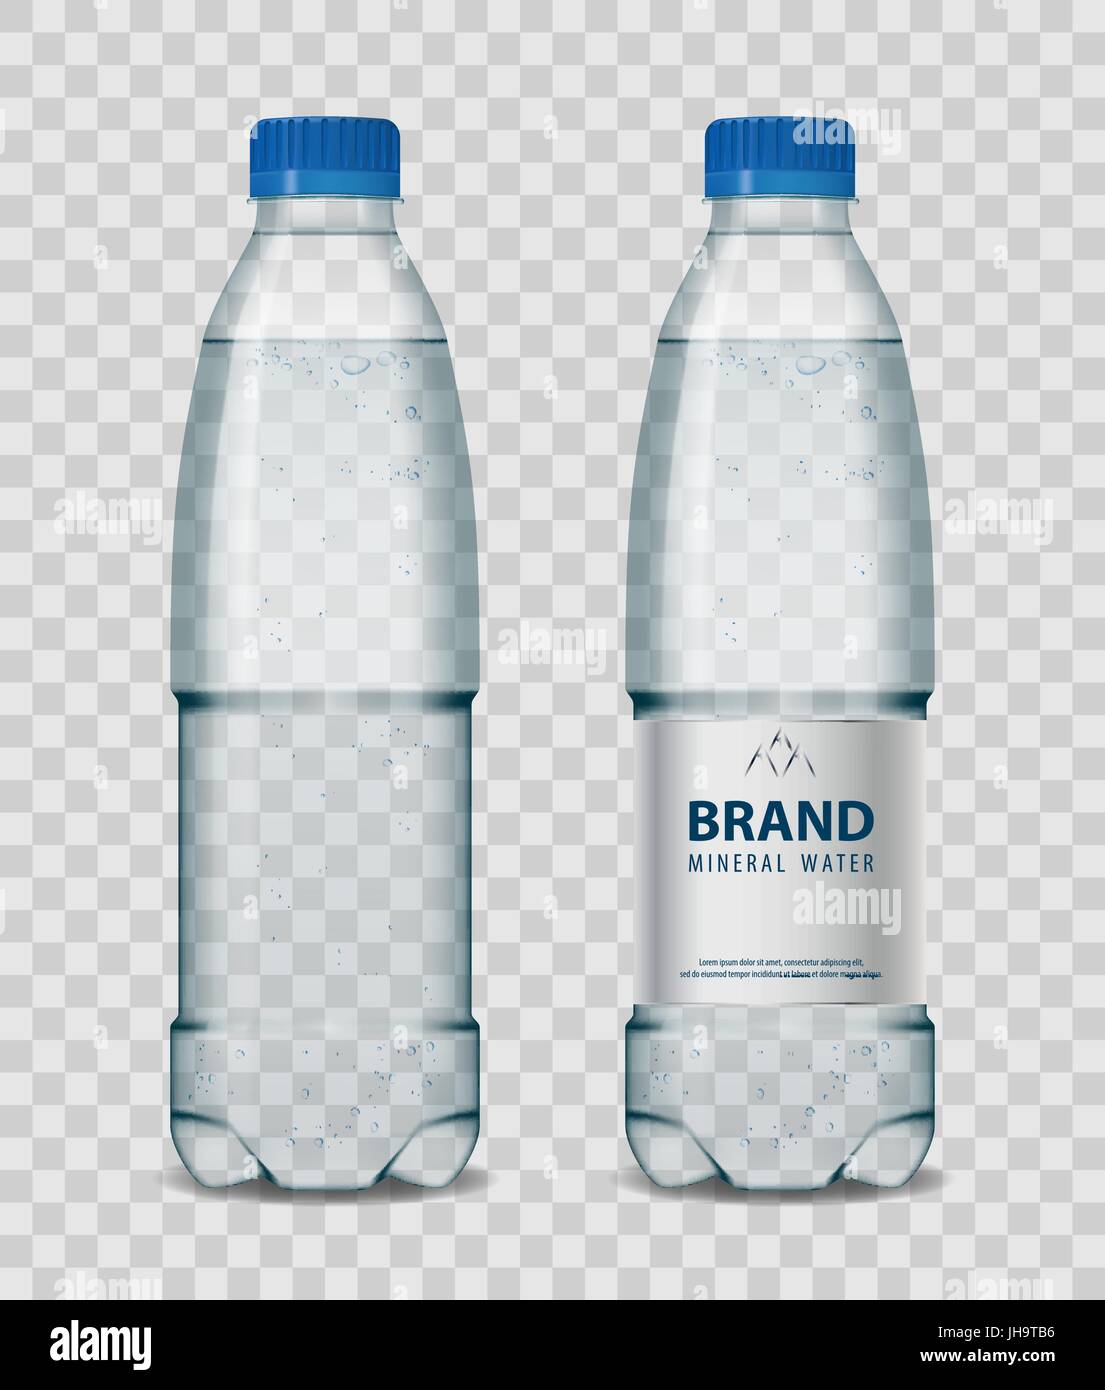 La bottiglia di plastica con acqua minerale con tappo blu su sfondo trasparente. Bottiglia realistica mockup illustrazione vettoriale. Illustrazione Vettoriale